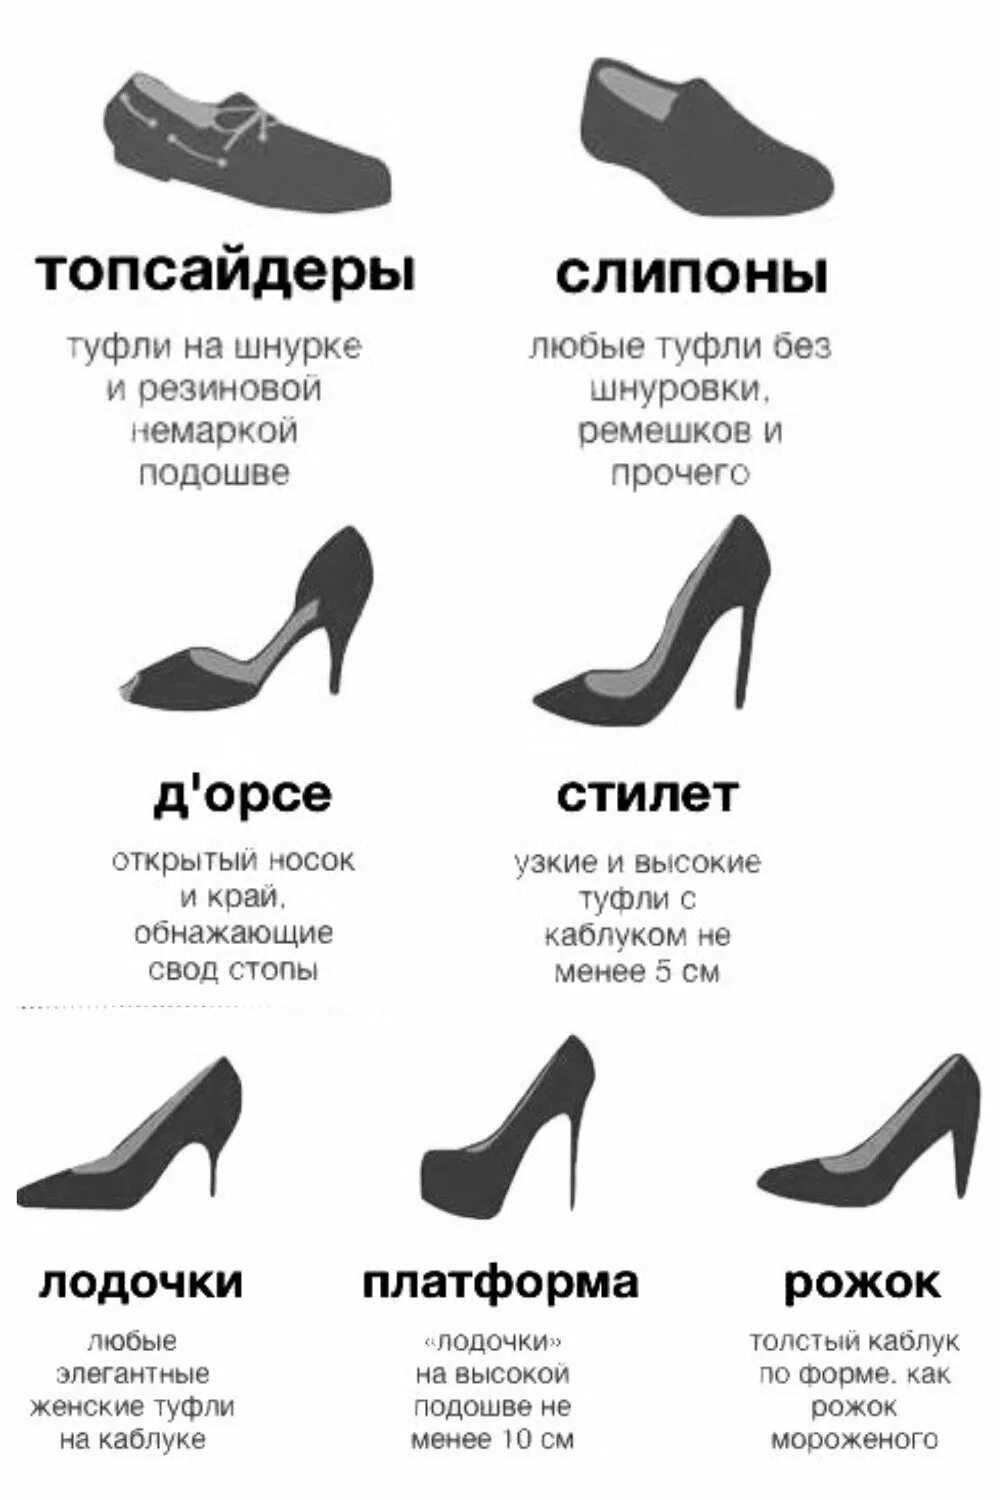 Название туфель женских. Модели женских туфель с названиями. Типы женской обуви названия. Типы женских туфель на каблуке.